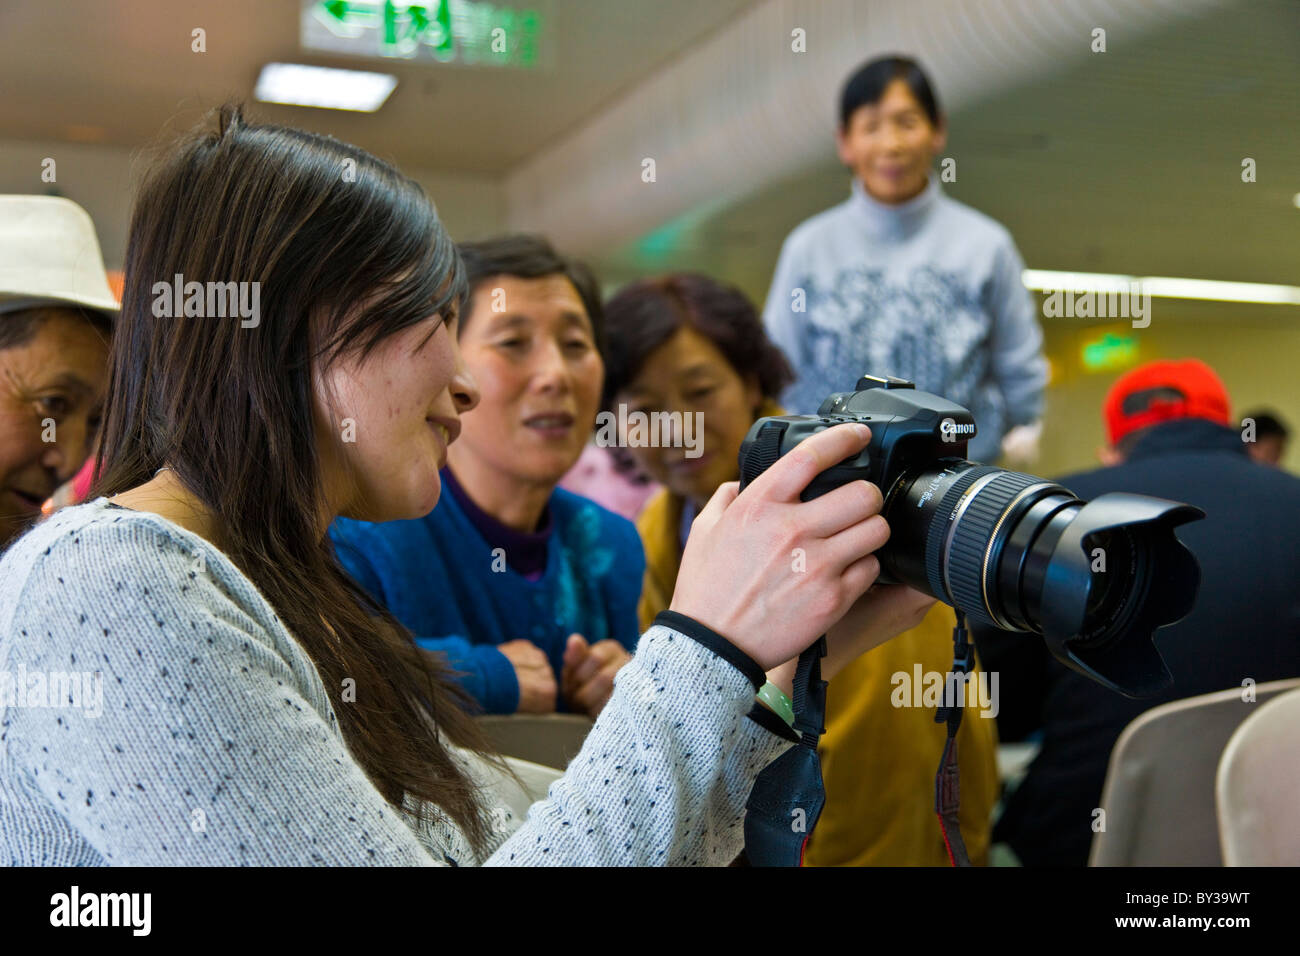 Femme chinoise montre des images sur l'écran de son reflex numérique Canon appareil photo à l'aéroport de Guangzhou en Chine. JMH4167 Banque D'Images